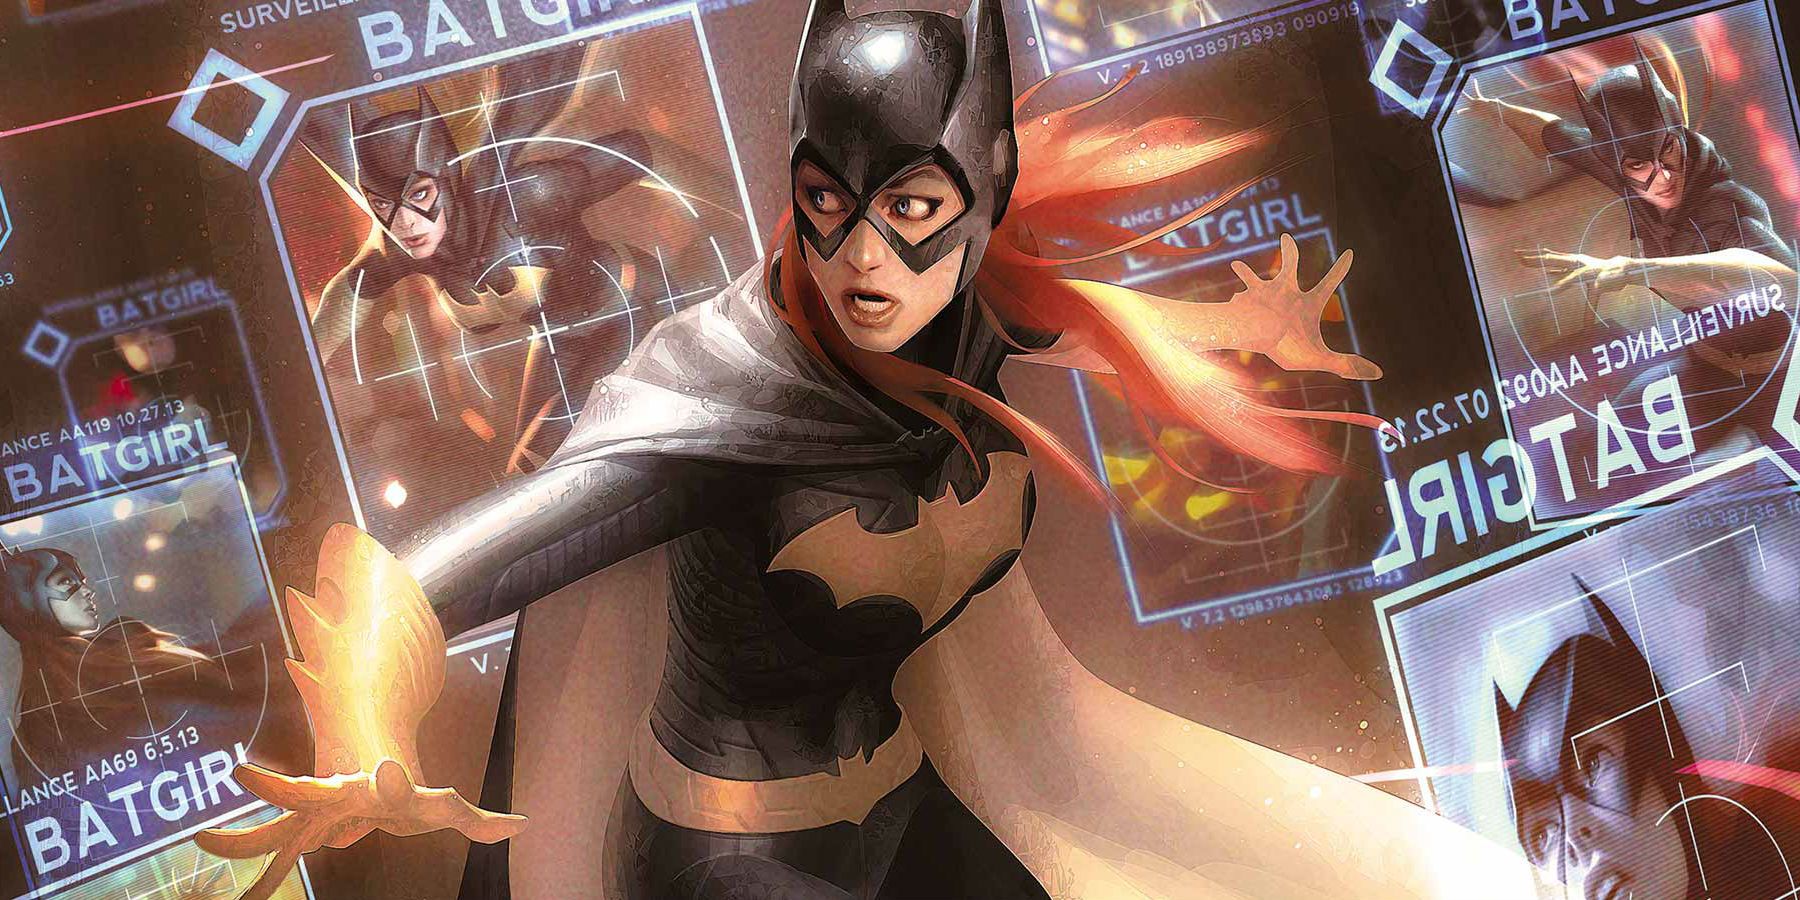 Batgirl comics cover